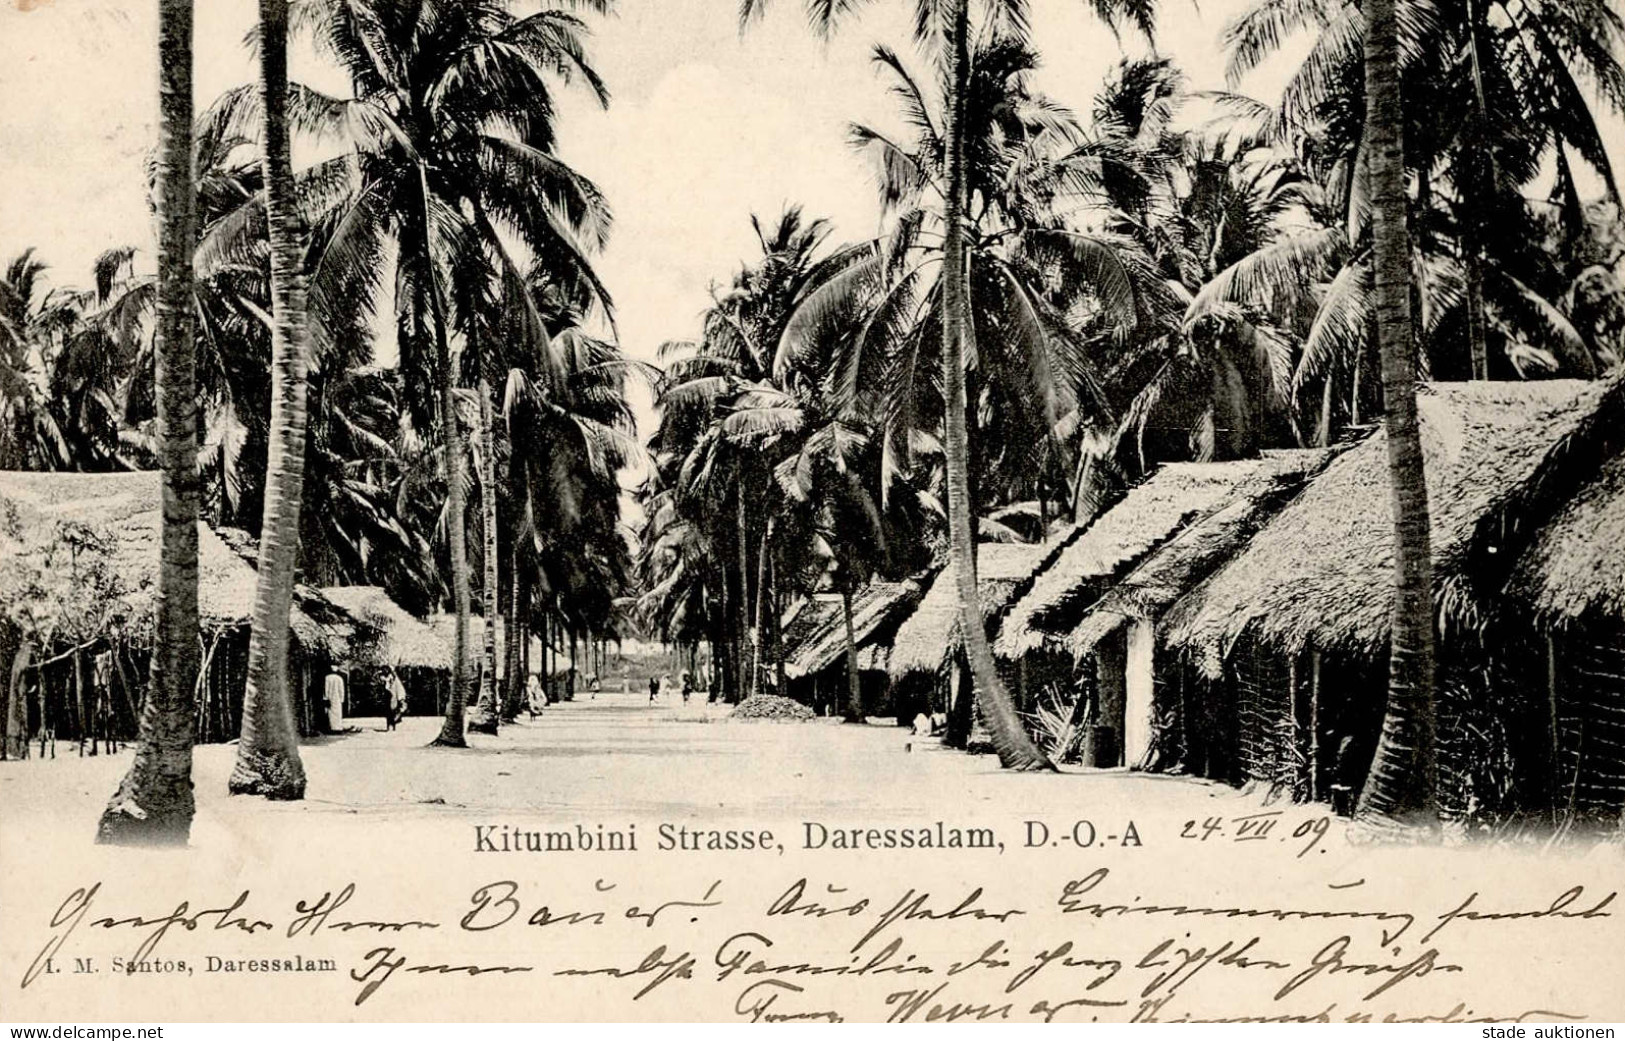 Kolonien Deutsch-Ostafrika Daressalam Stempel Kilossa 1909 I-II Colonies - History